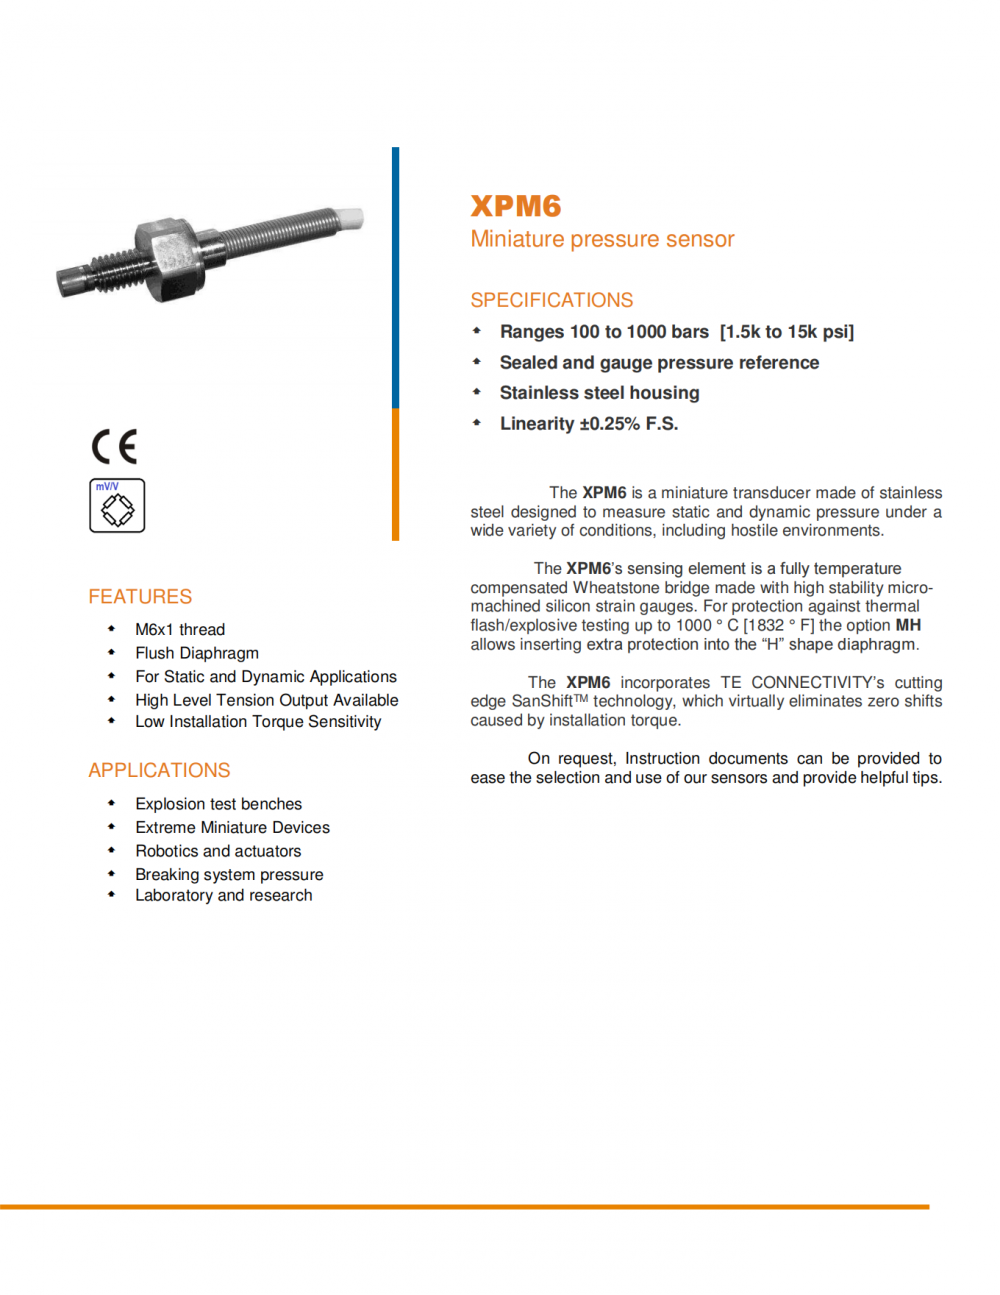 MEAS XPM6高动态压力传感器采用SanShift技术消除了安装扭矩引起的零点漂移